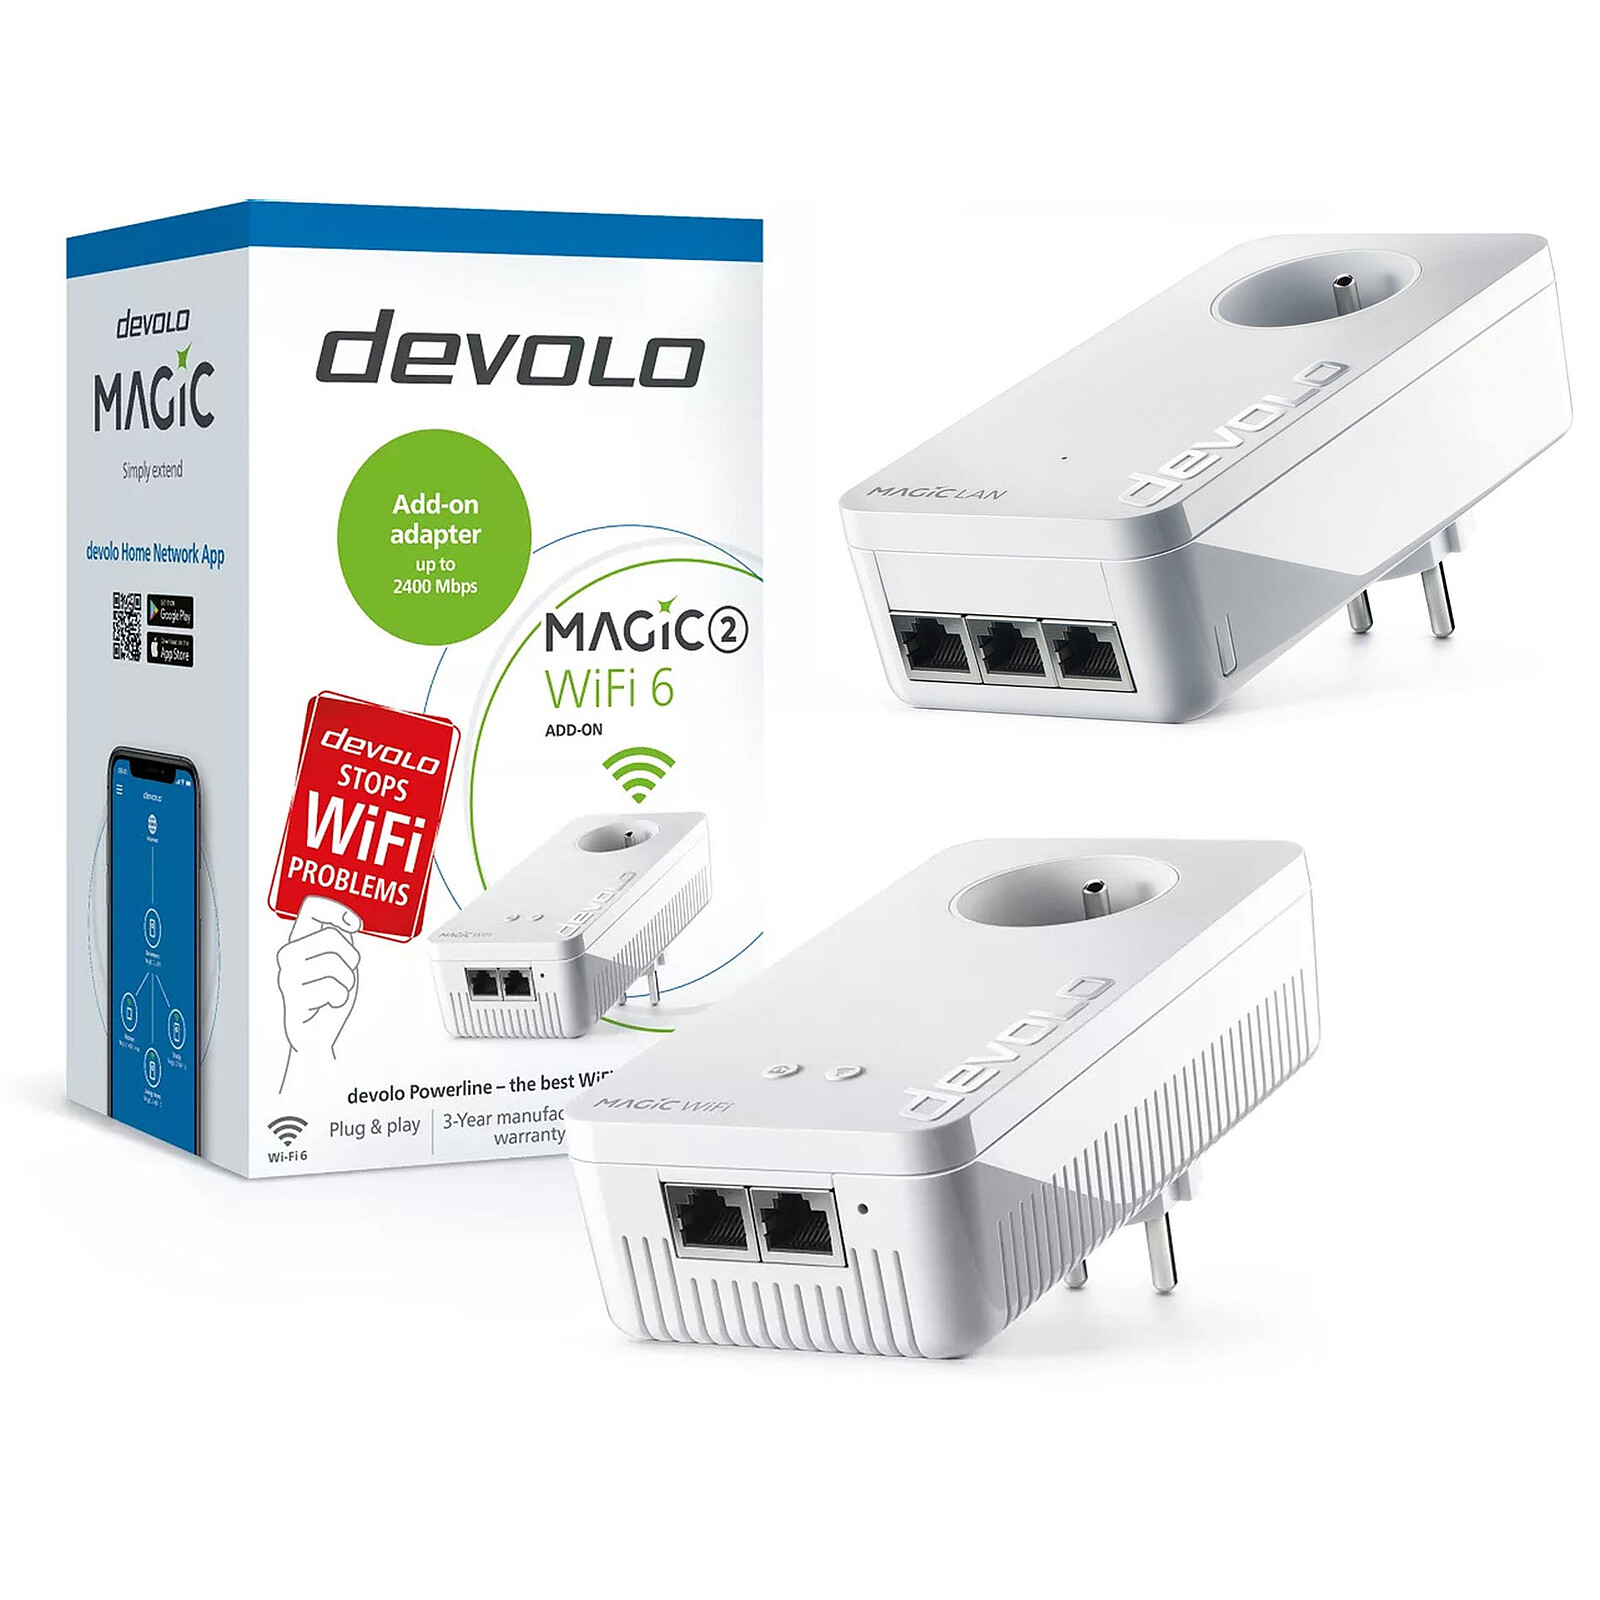 devolo Magic 2 Wi-Fi 6 + devolo Magic 2 LAN Triple - CPL - LDLC